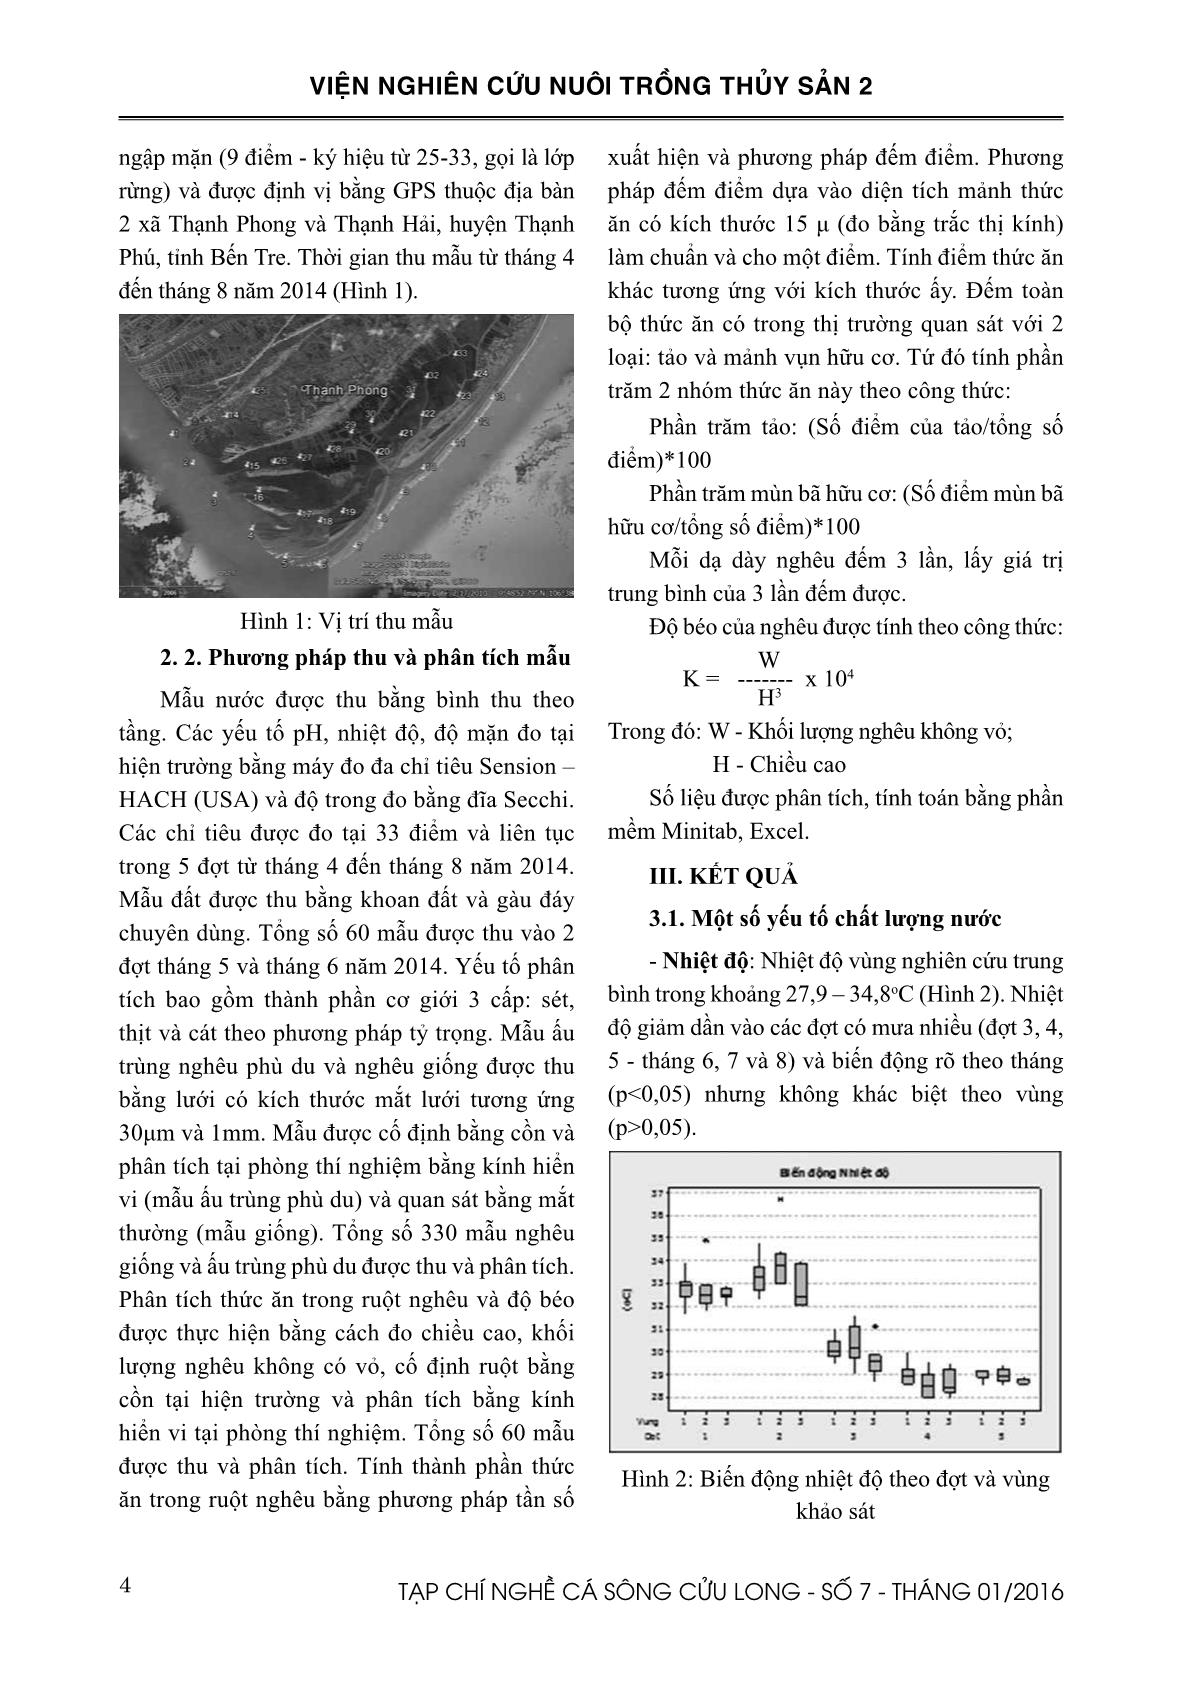 Tạp chí Nghề cá sông Cửu Long - Số 07/2016 trang 4